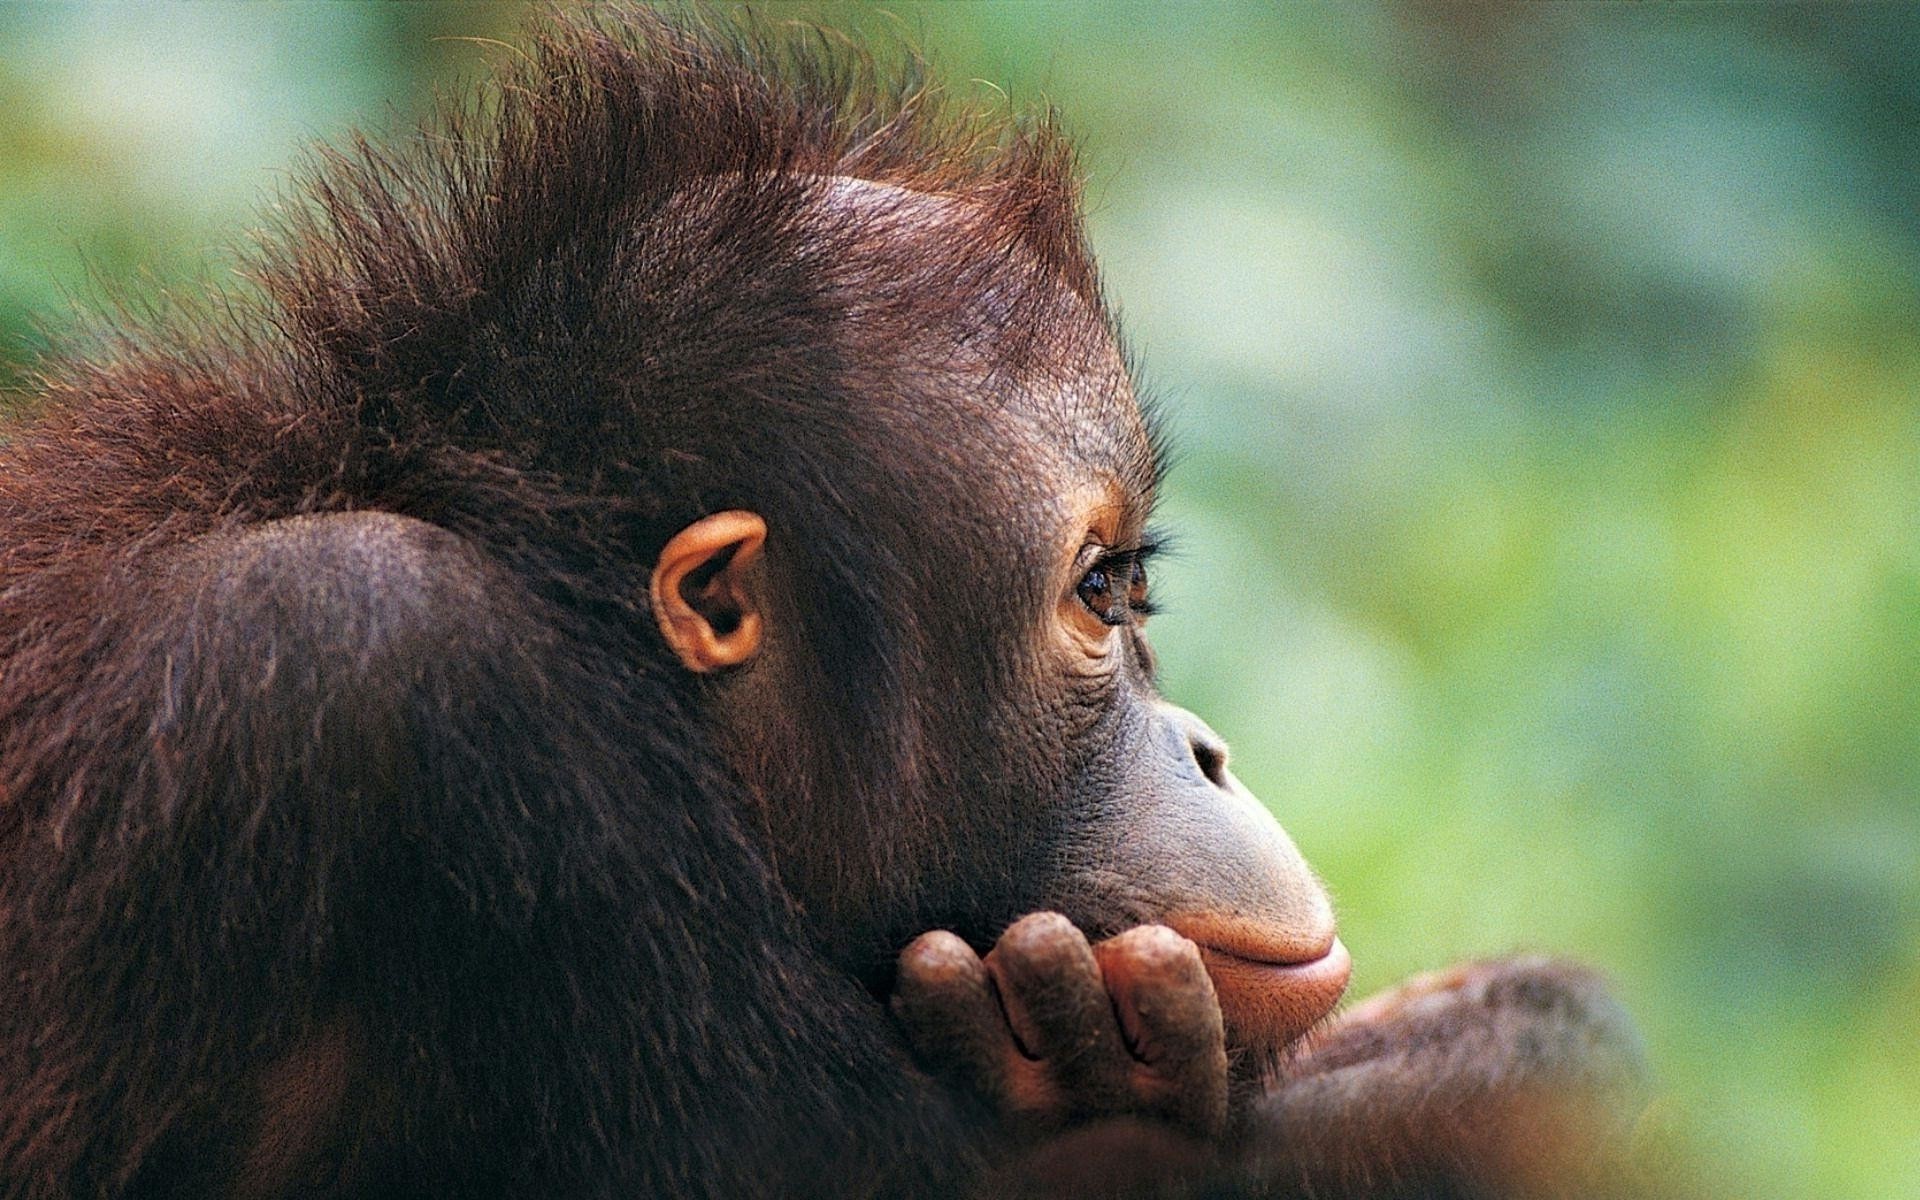 Chimpanzee, Cute monkey wallpaper, Adorable pictures, Animal sweetness, 1920x1200 HD Desktop